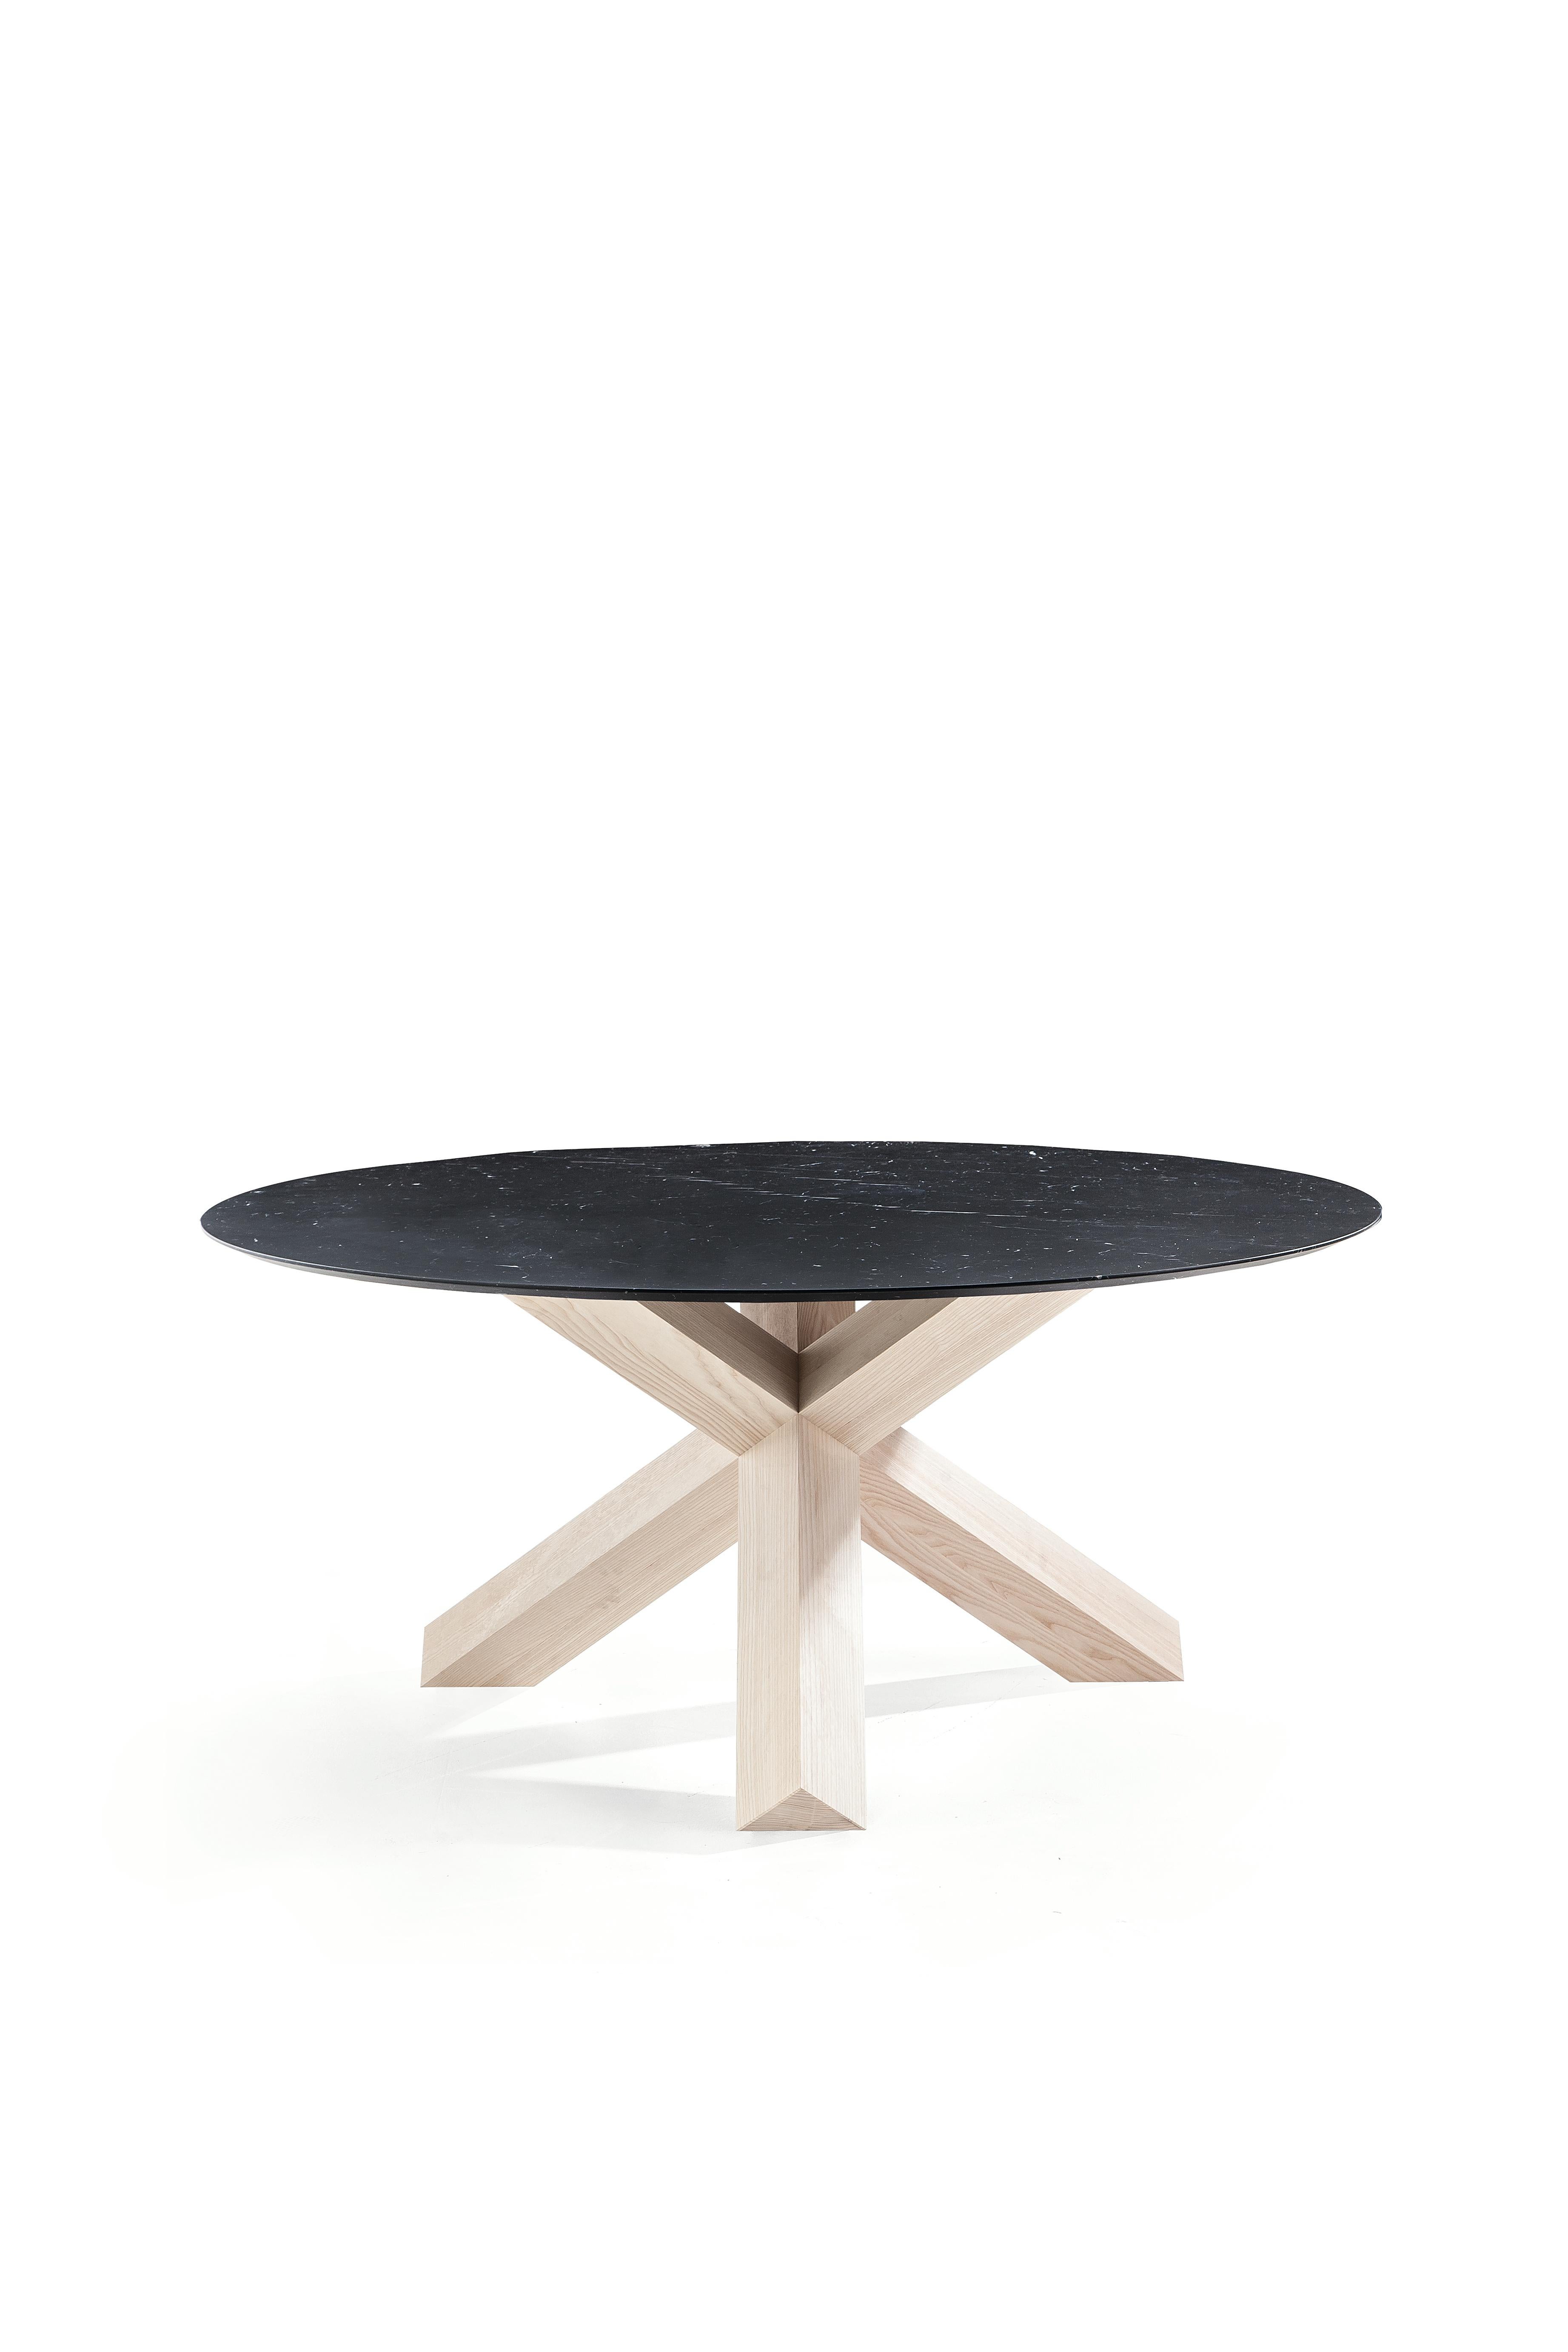 Mario Bellini La Rotonda Table by Cassina For Sale 4